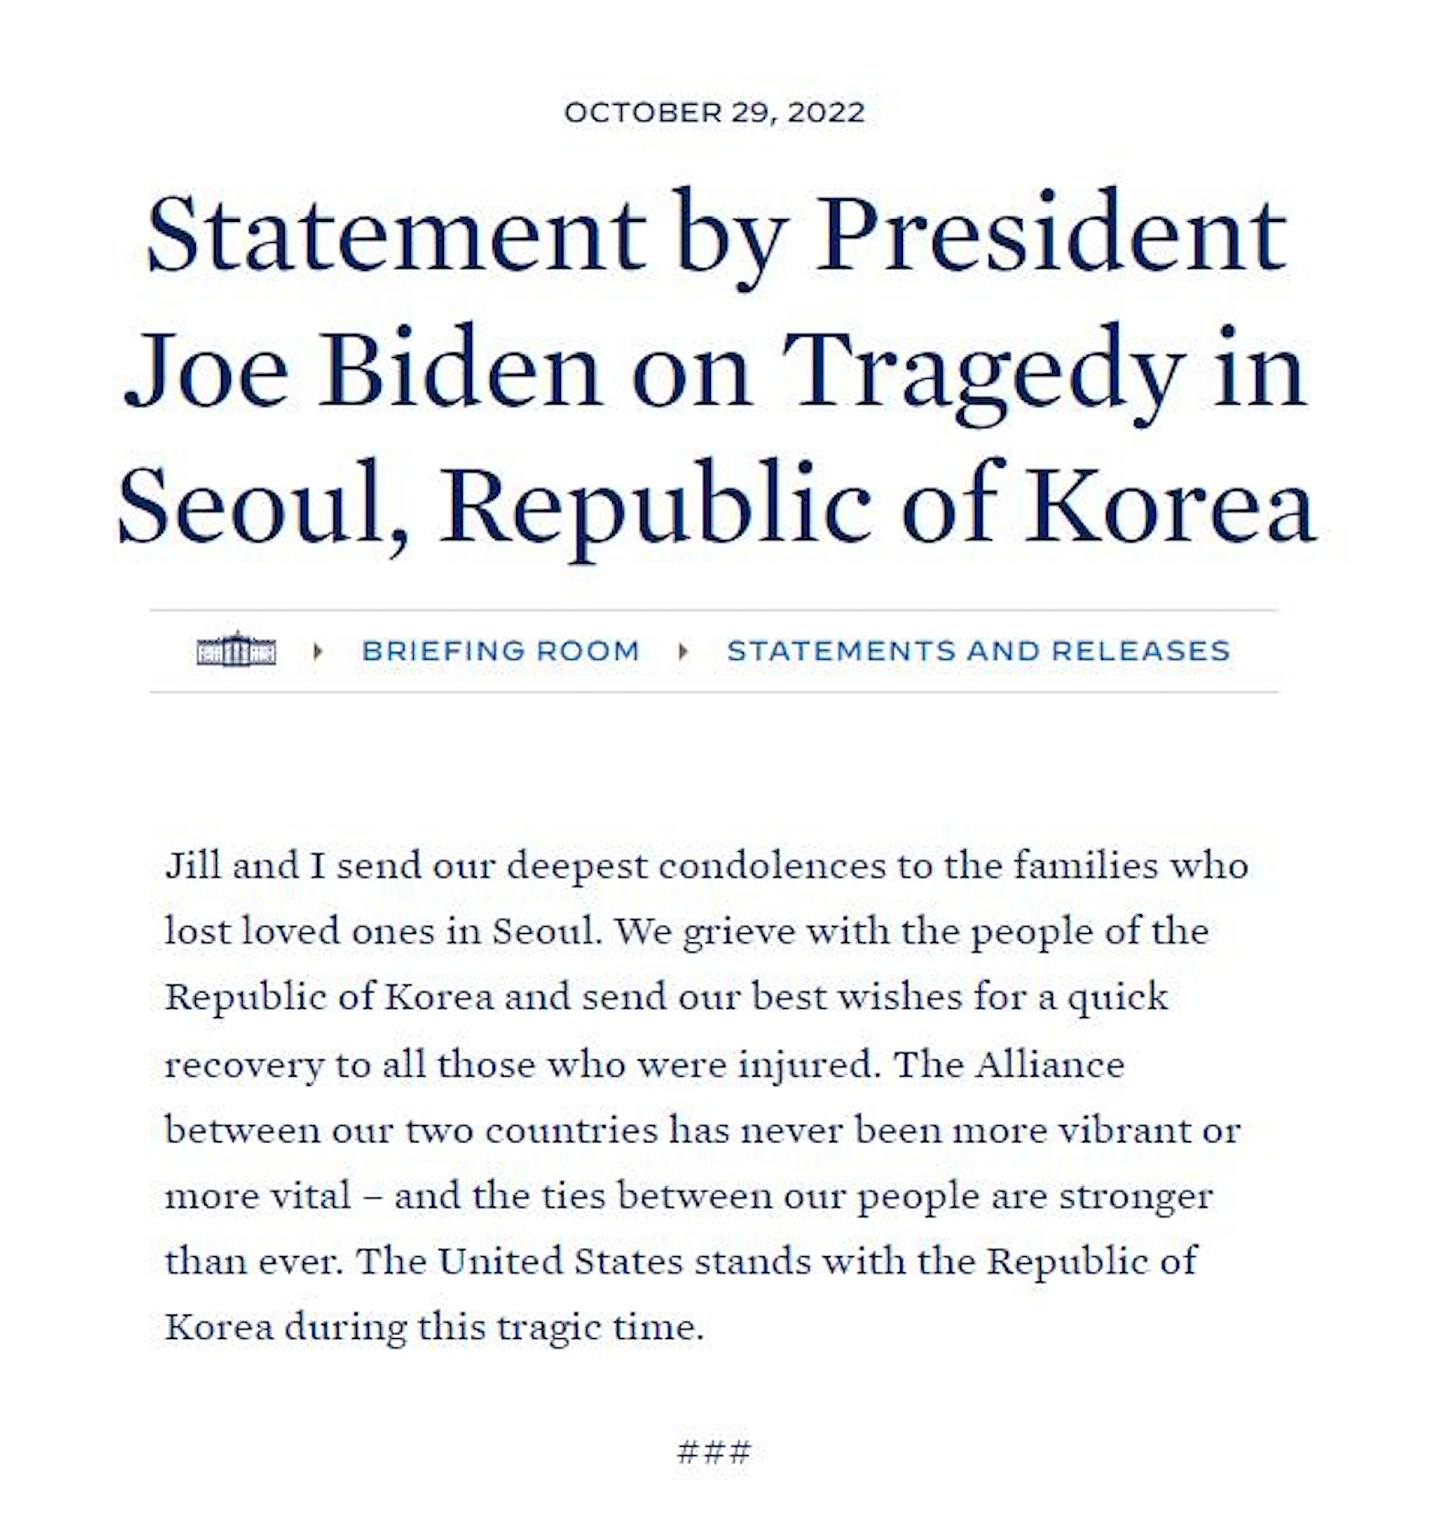 韩国首尔梨泰院10月29日发生人踩人事件。 图为美国白宫网站截图。 白宫声明形容事件为一场悲剧。 （美国白宫）